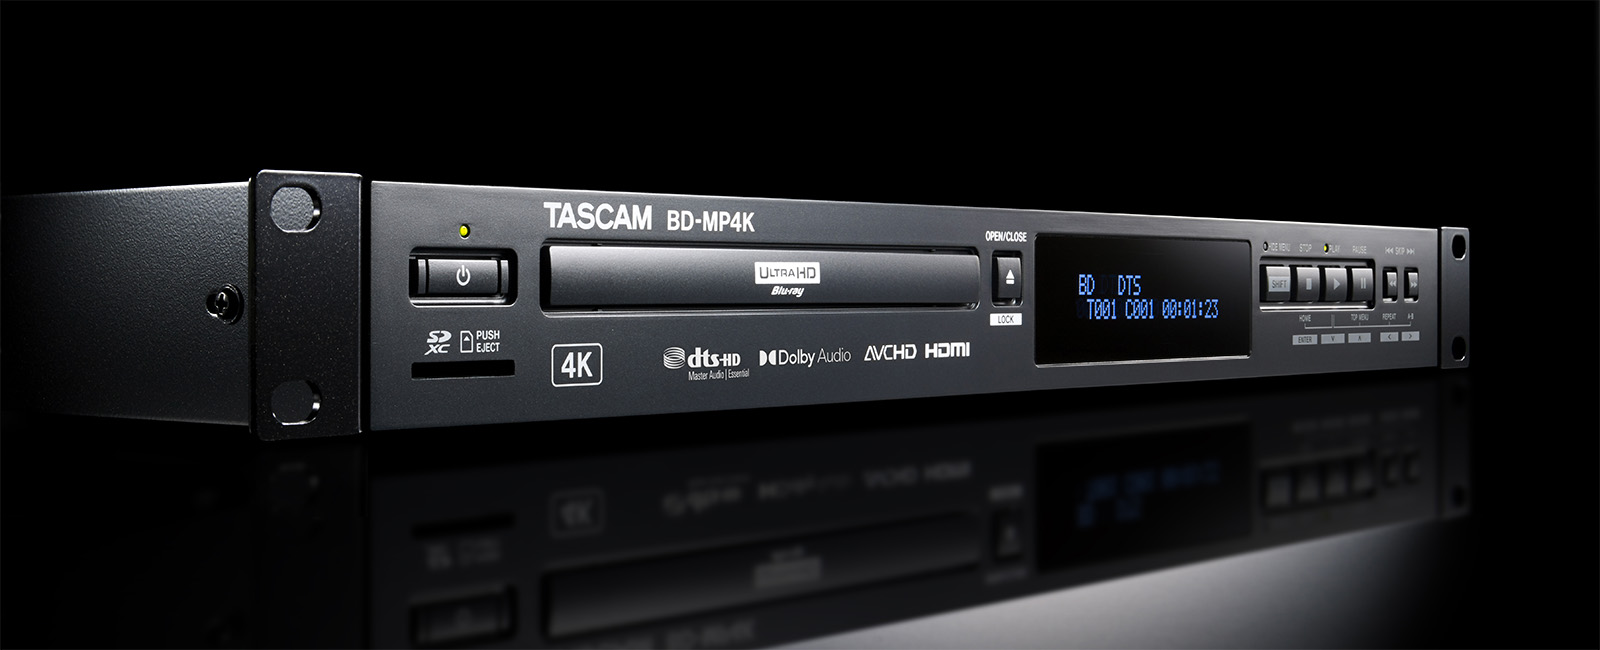 Nuevo reproductor de Blu-ray 4K UHD, te presentamos el BD-MP4K de Tascam